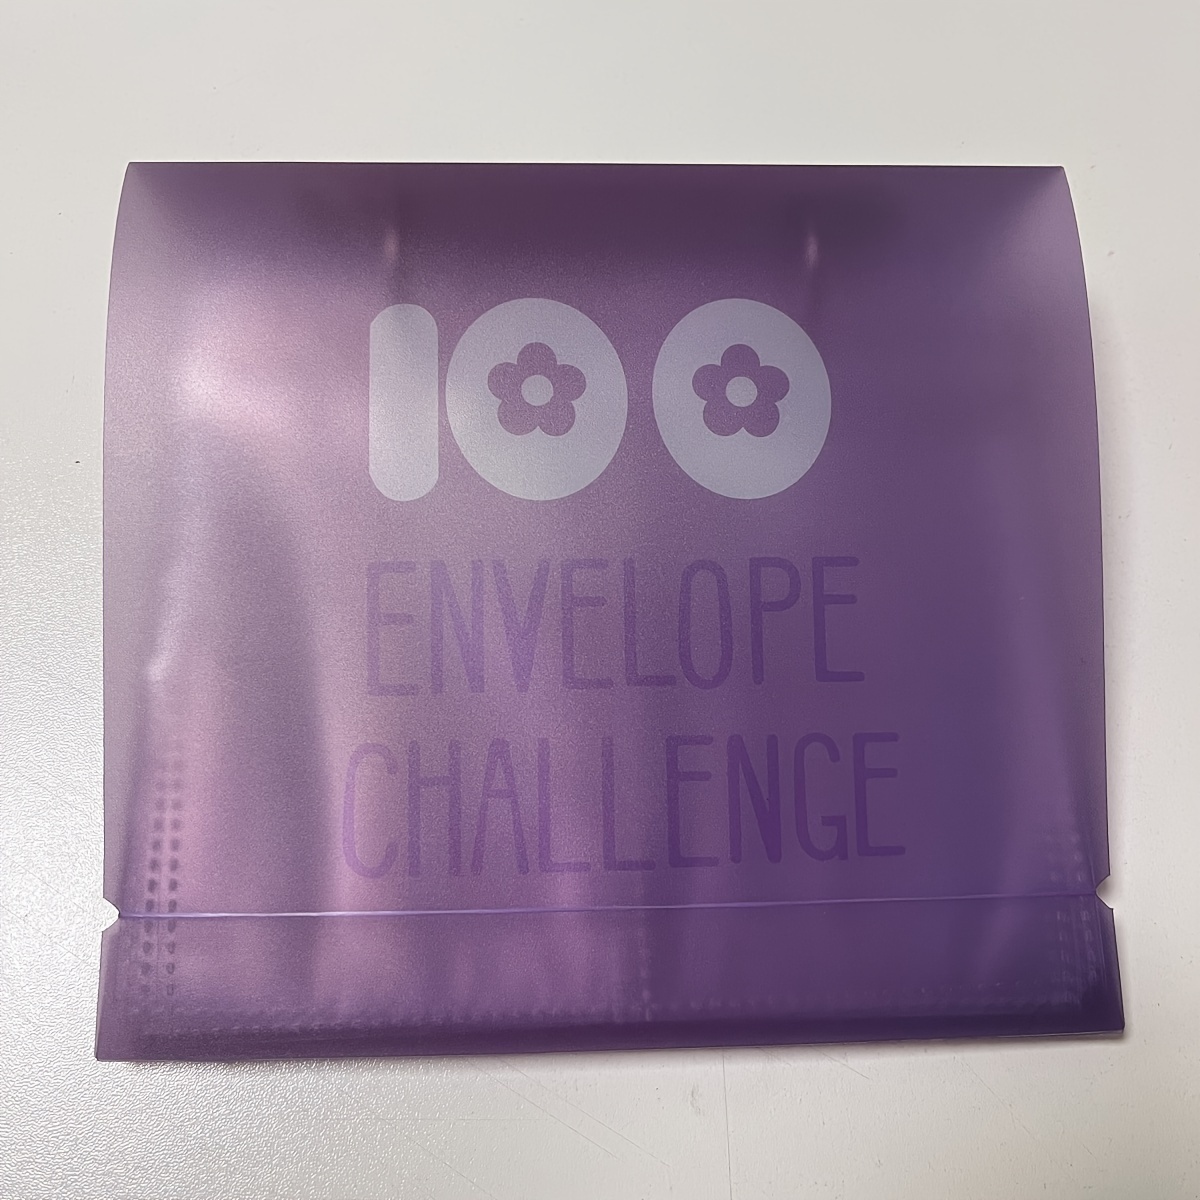 Violet - Classeur de défi d'enveloppe, moyen facile et amusant d